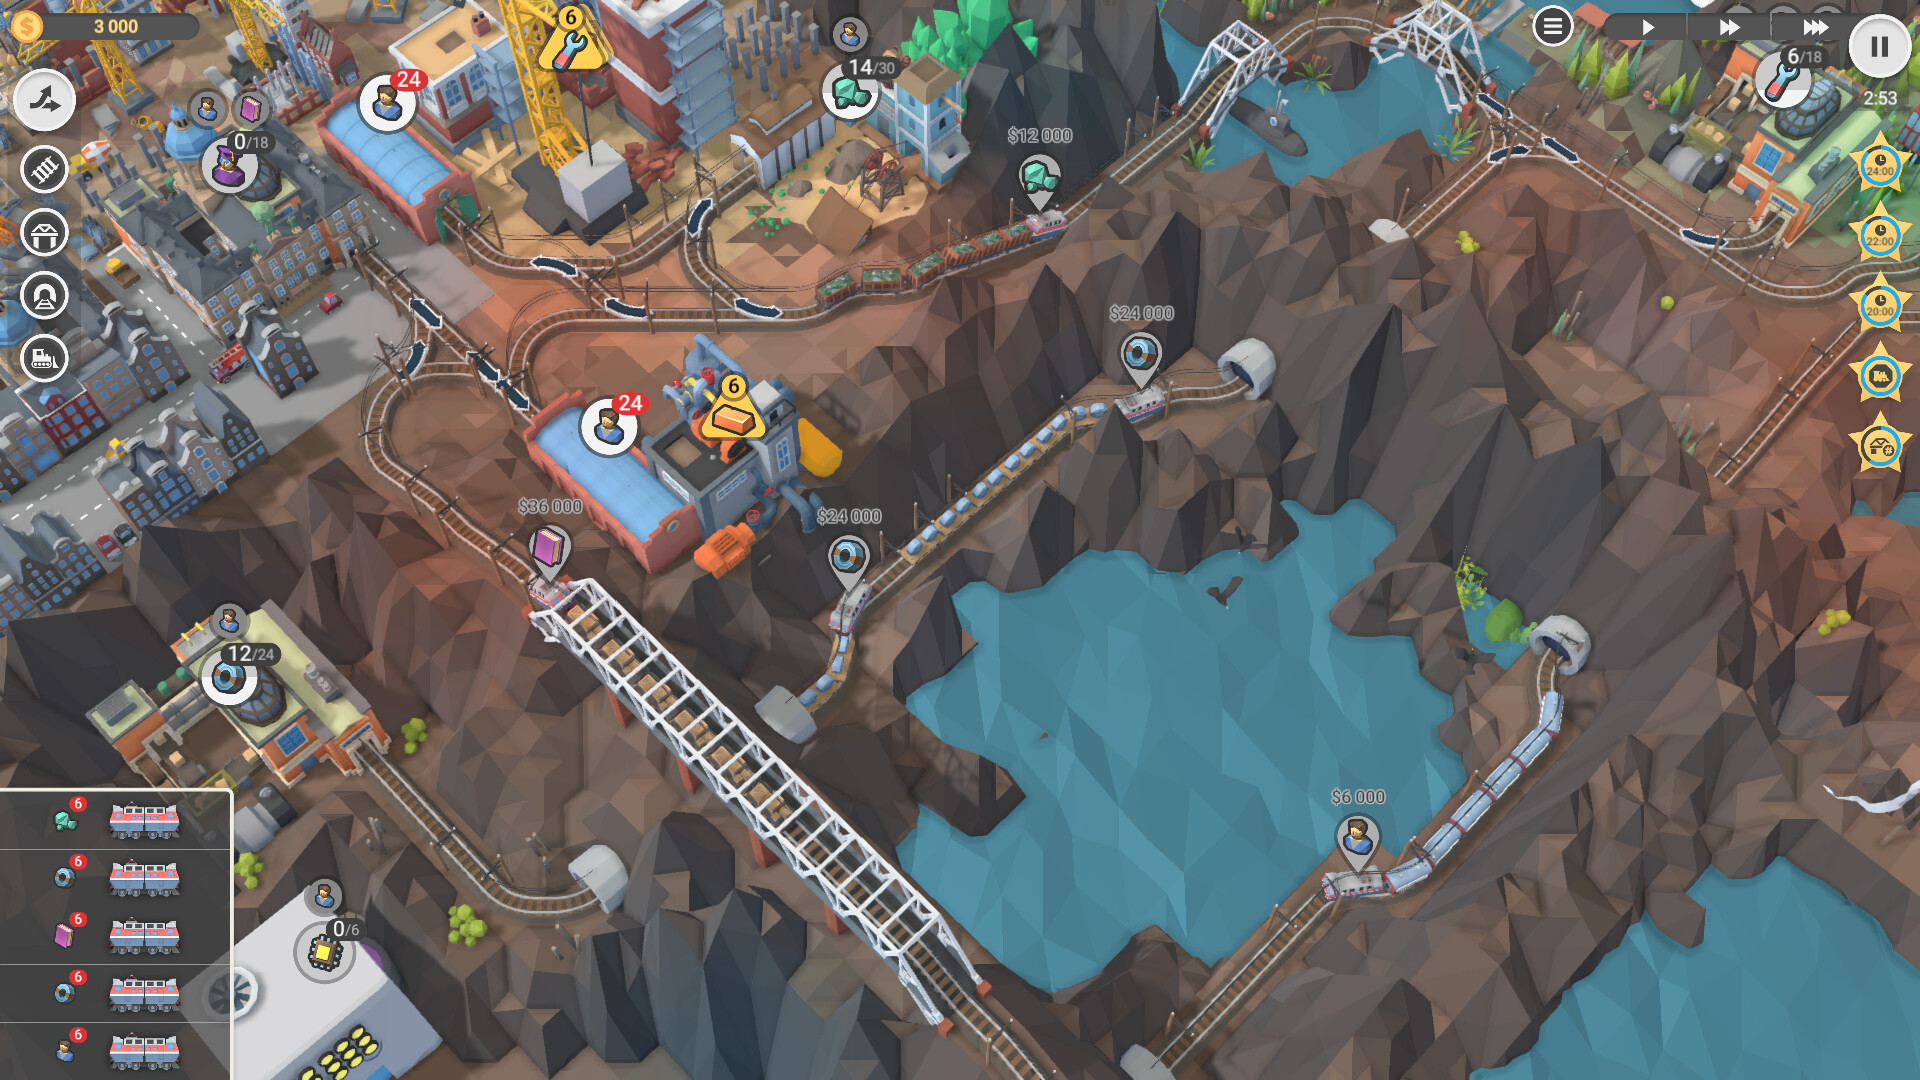 Train Valley 2: Workshop Gems - Sapphire DLC Steam CD Key